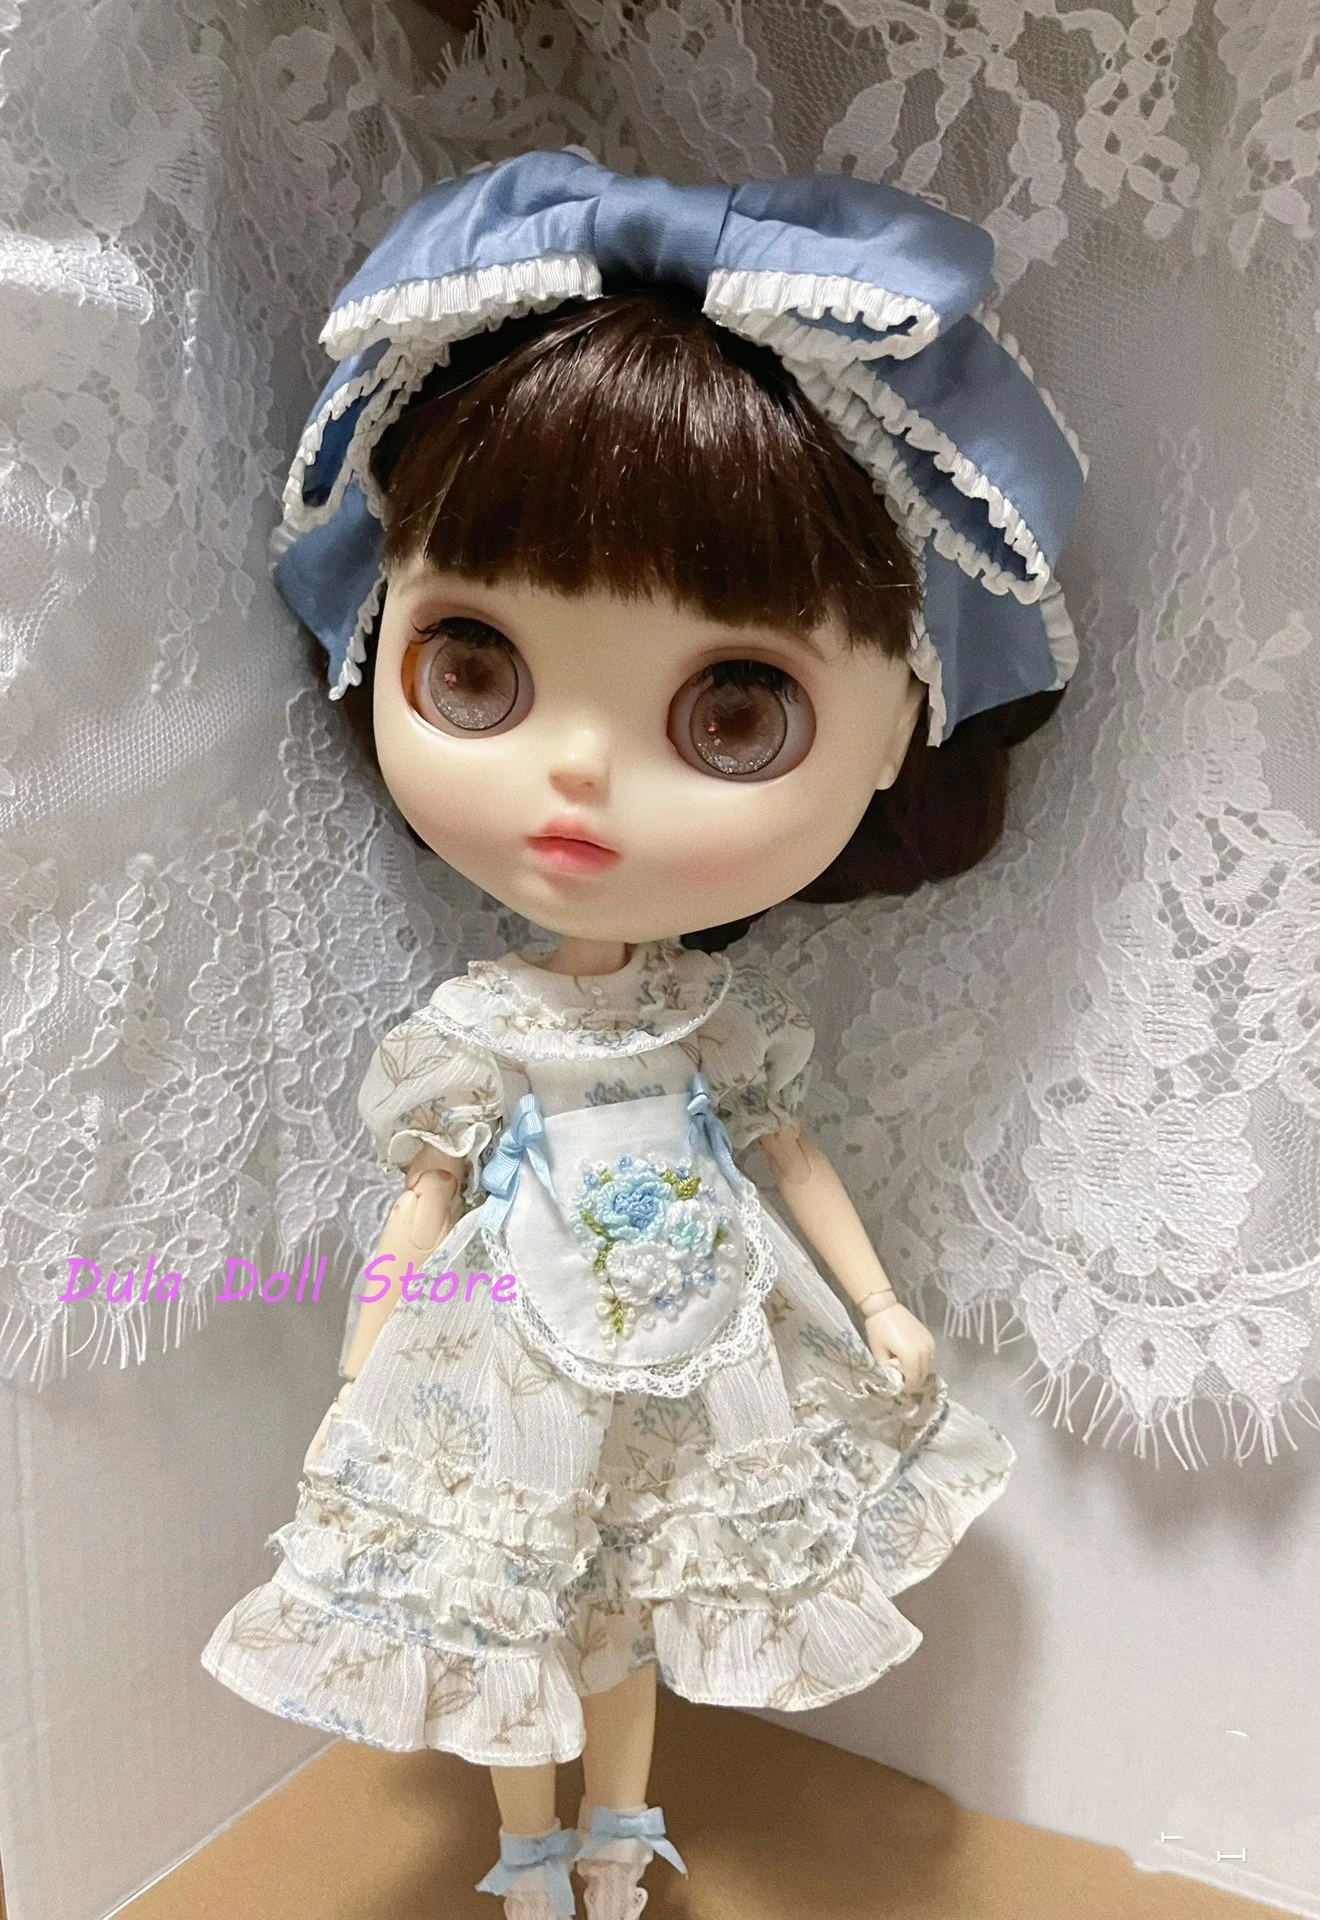 

Одежда для куклы Dula, платье, юбка с цветочным принтом Blythe ob24 ob22 Diandian Azone Licca ICY jerfish 1/6, аксессуары для шарнирных кукол